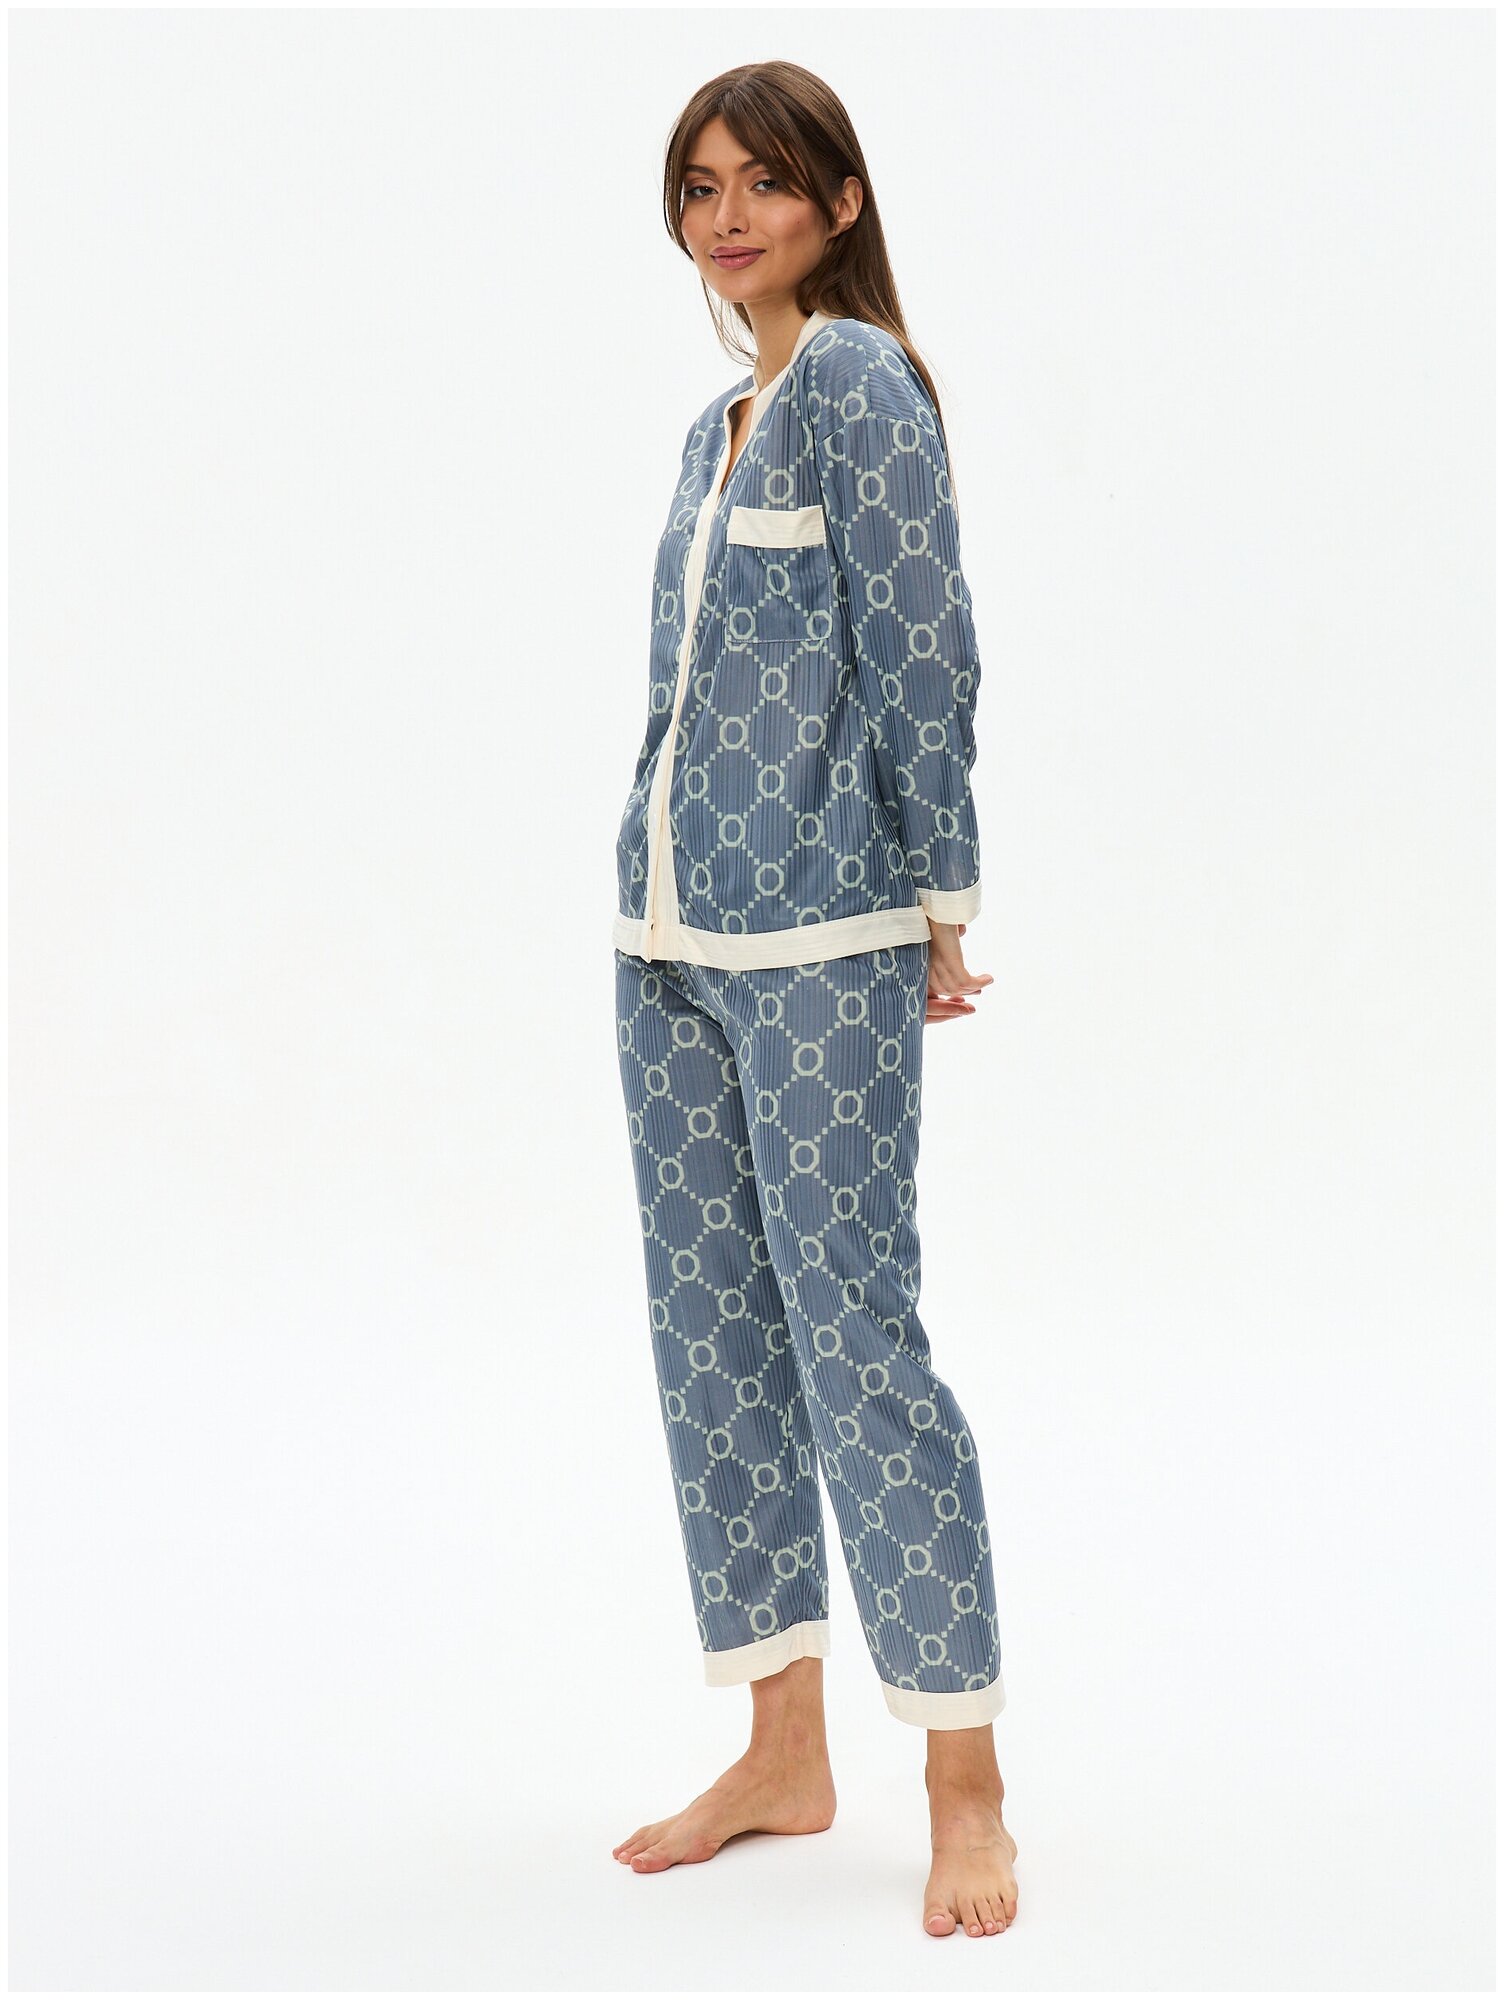 Пижама женская с брюками и рубашкой для сна, домашняя одежда 48/XXL размер - фотография № 9